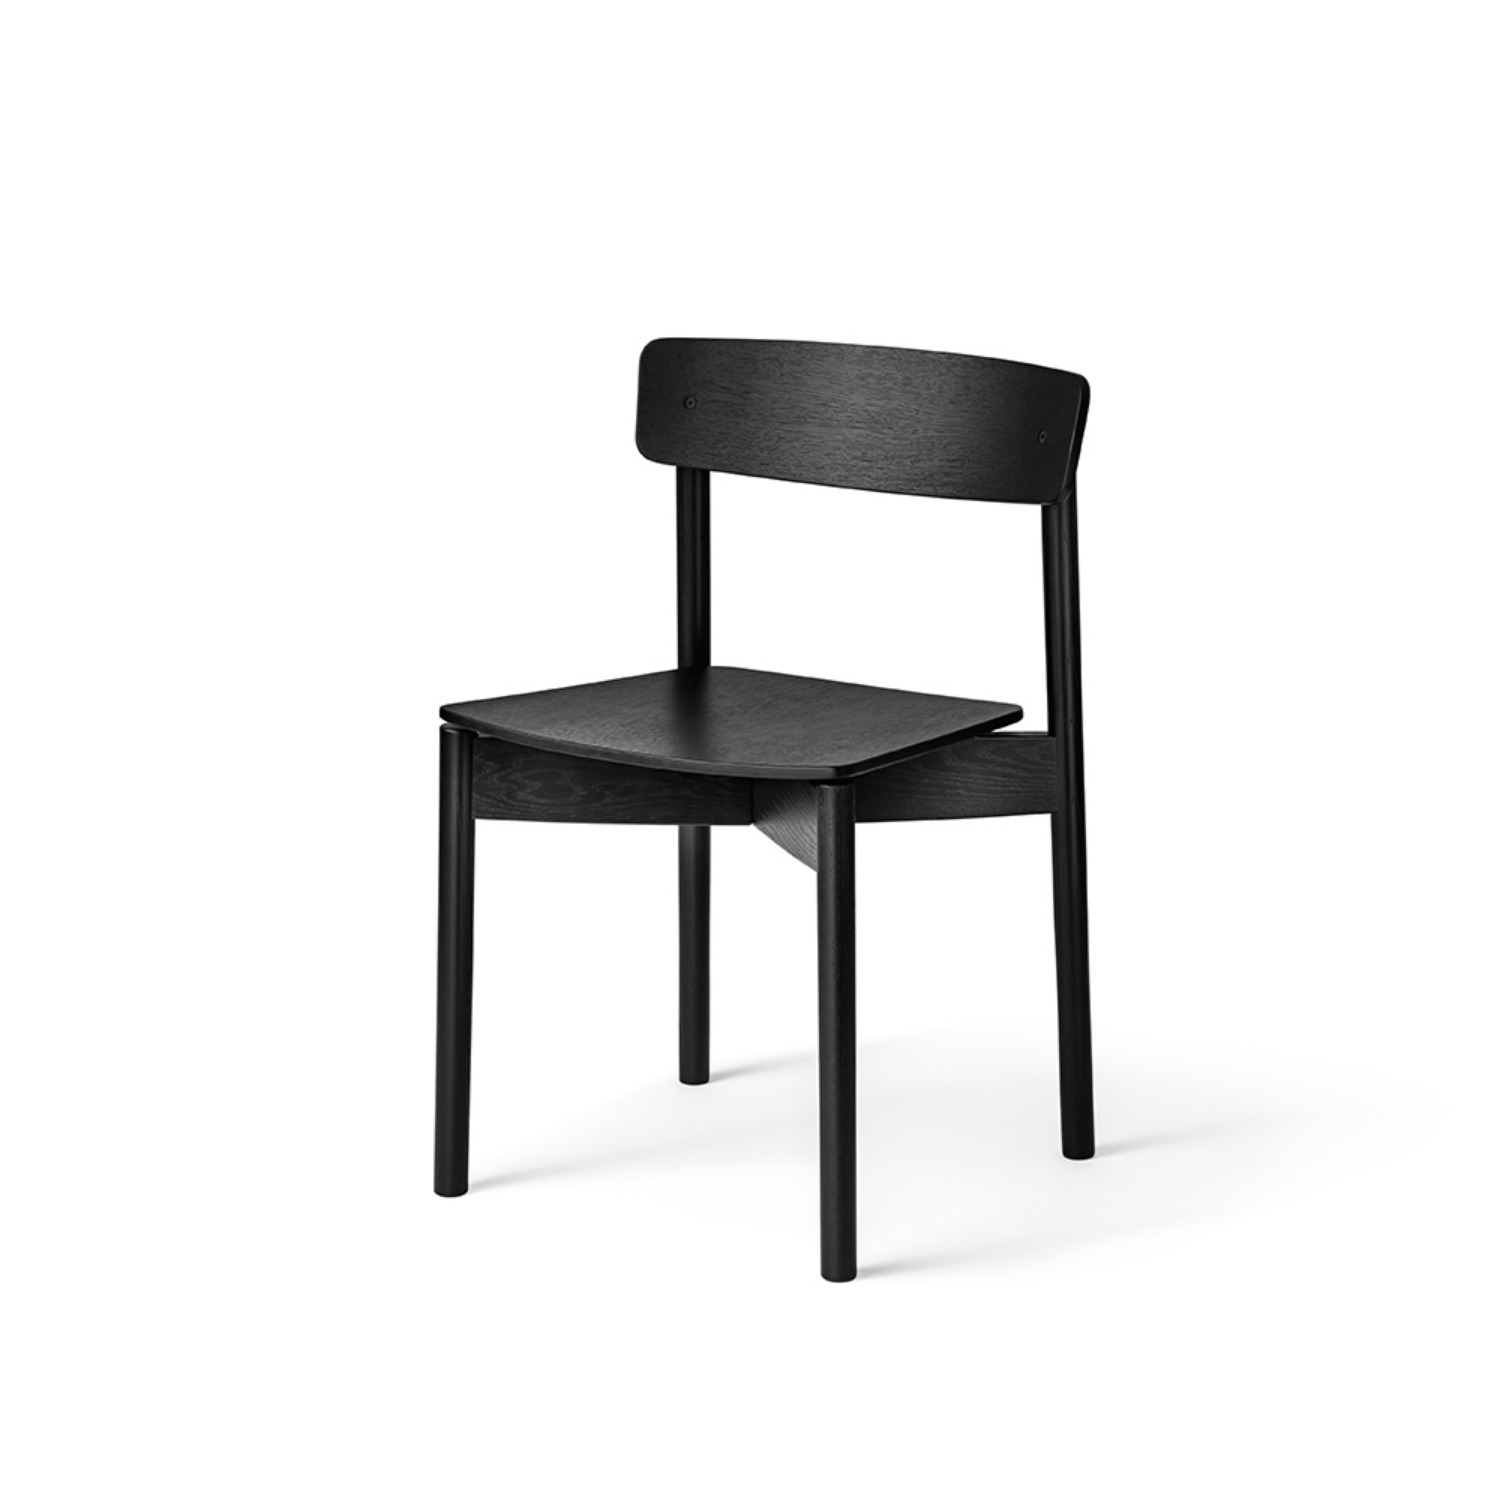 [TAKT] Cross Chair (Black)